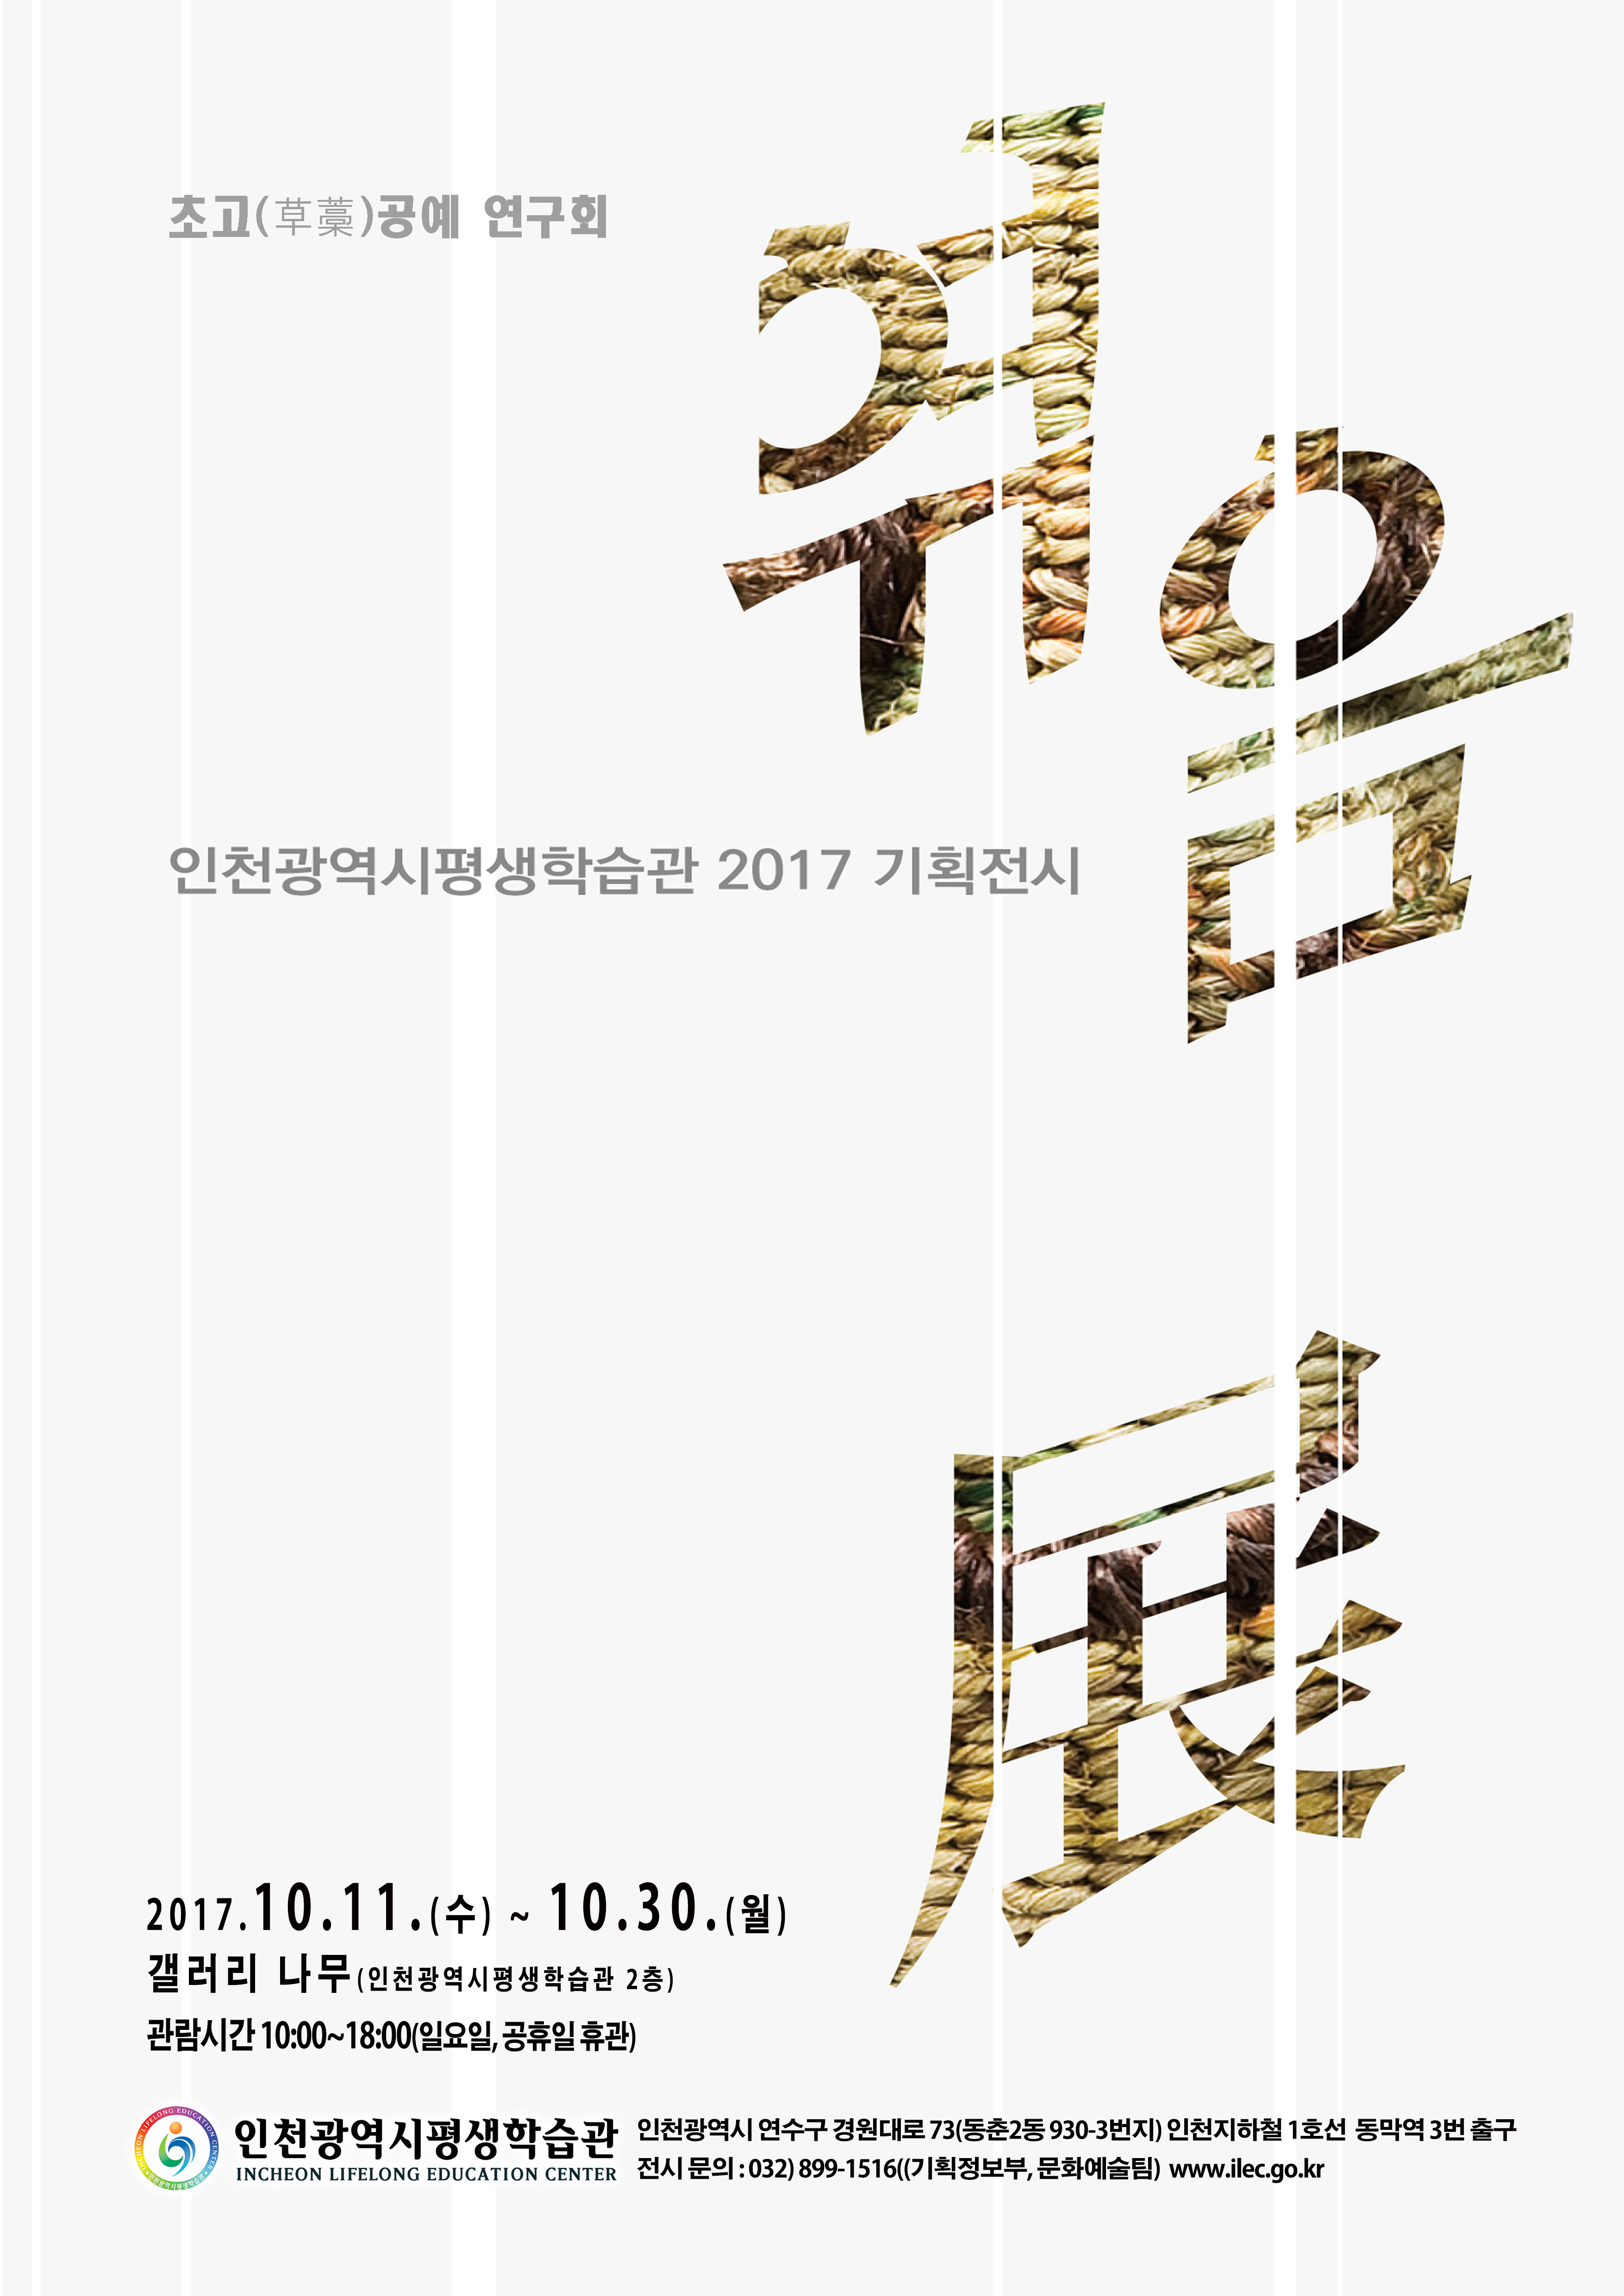 [2017 기획전시] 초고(草藁) 연구회, 엮음展 관련 포스터 - 자세한 내용은 본문참조